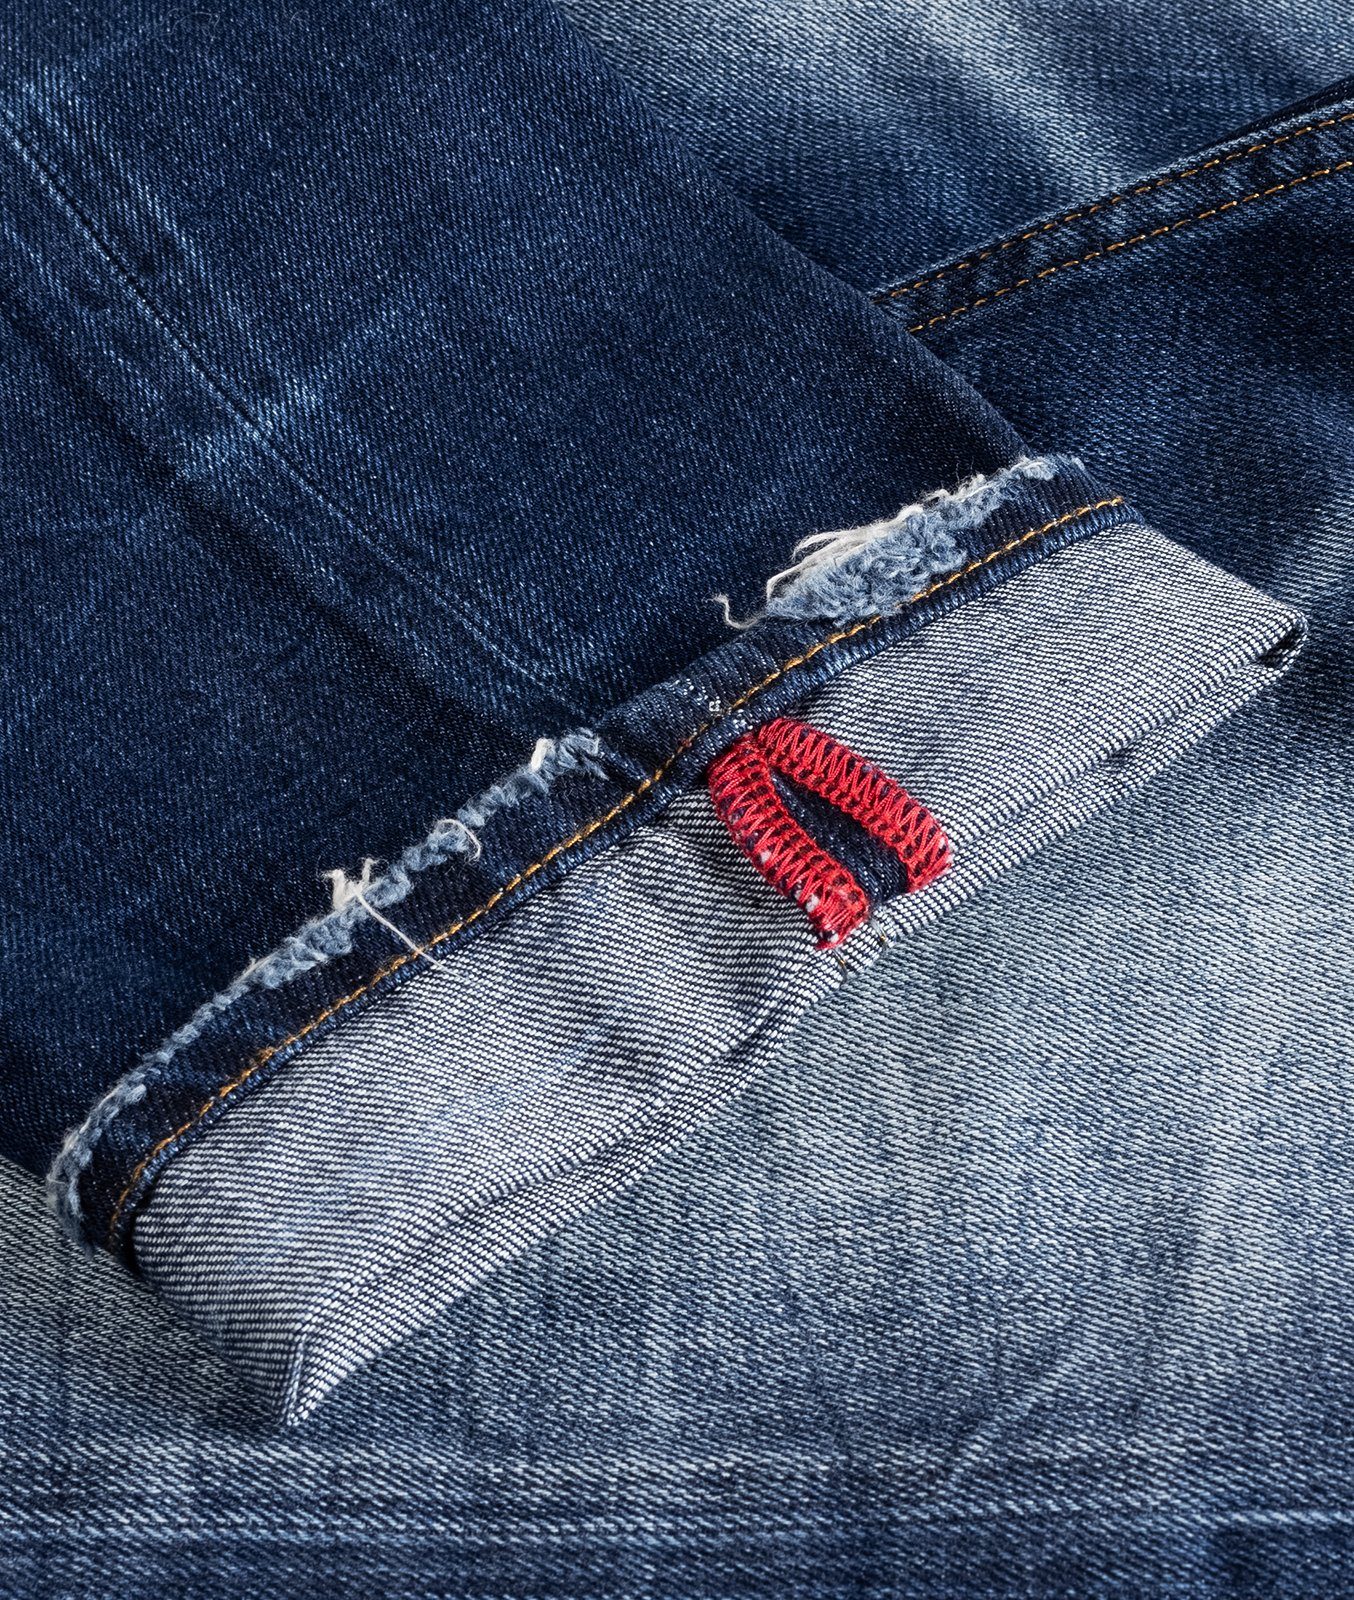 Indumentum Regular-fit-Jeans Herren Jeans Stonewashed Blau IR-501